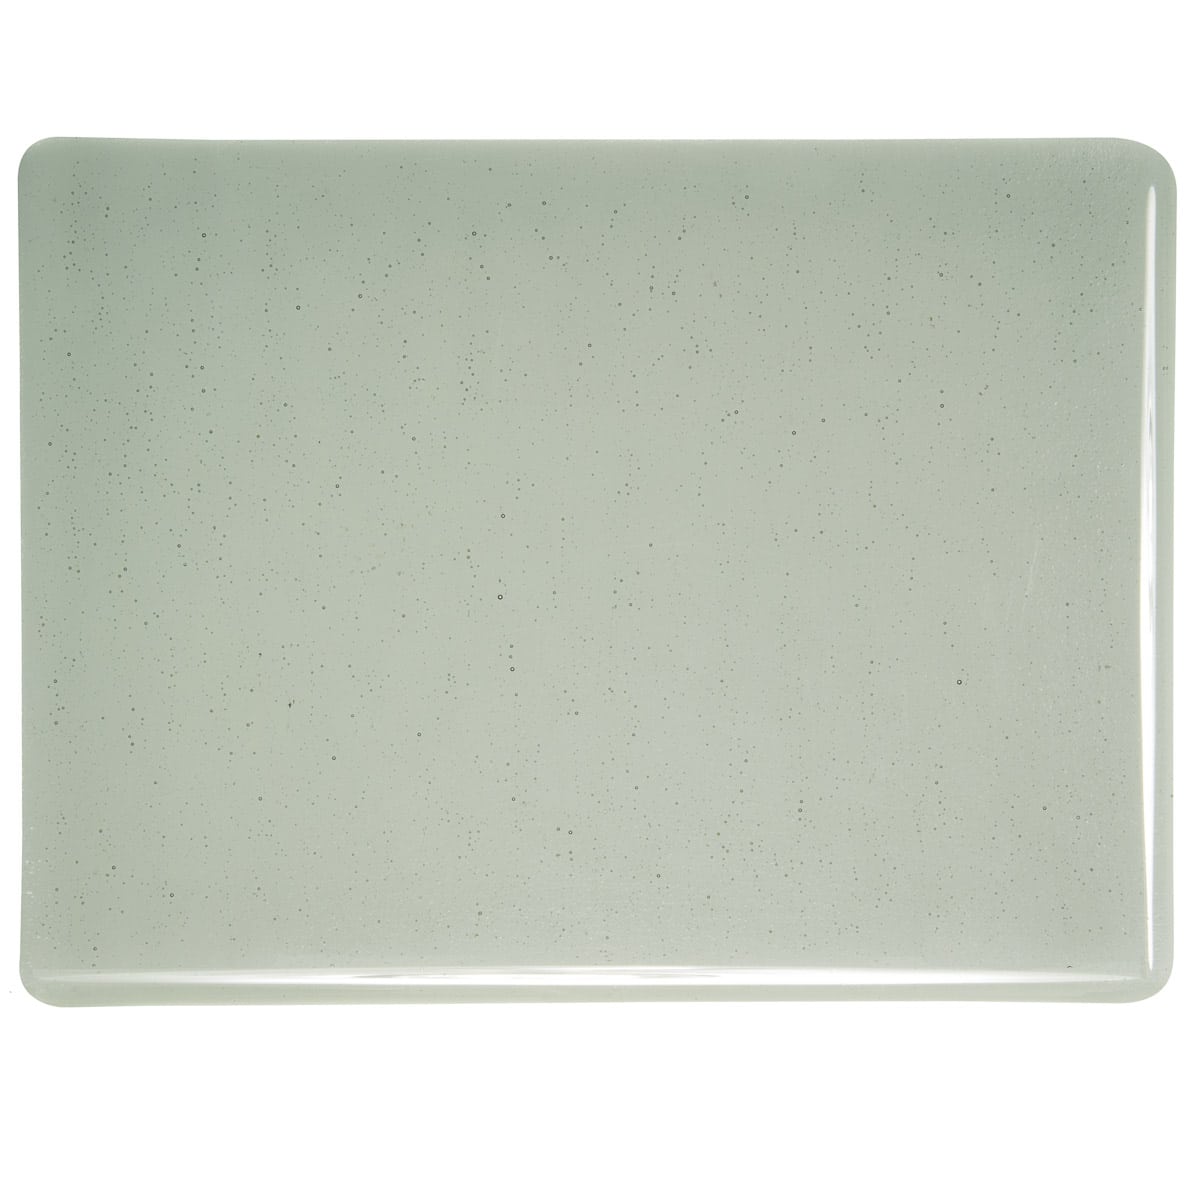 001429 Transparent Light Silver Gray sheet glass swatch